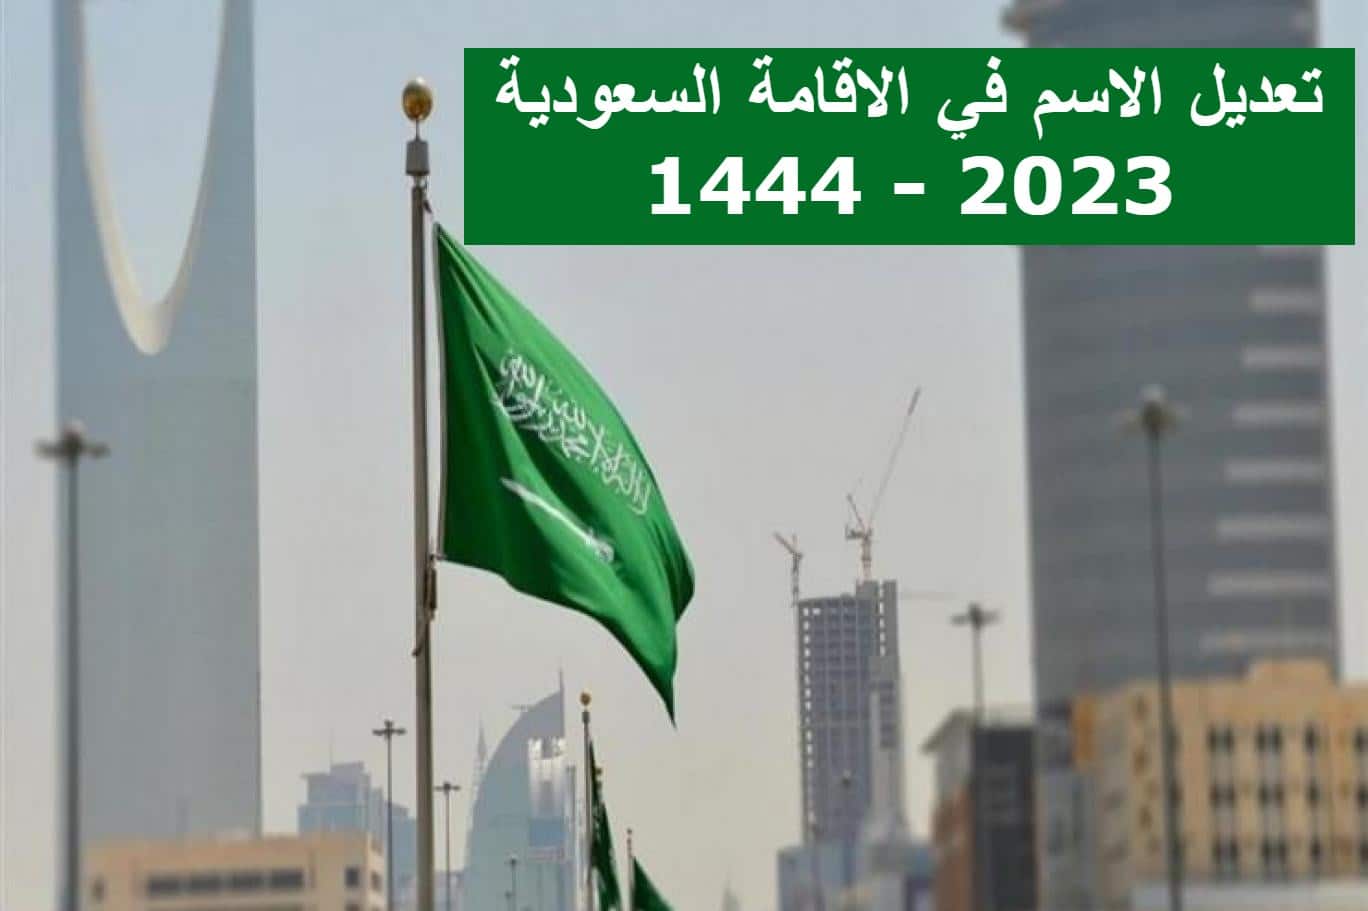 تعديل الاسم في الاقامة السعودية للمقيمين 2023 – 1444 .. الخطوات والشروط